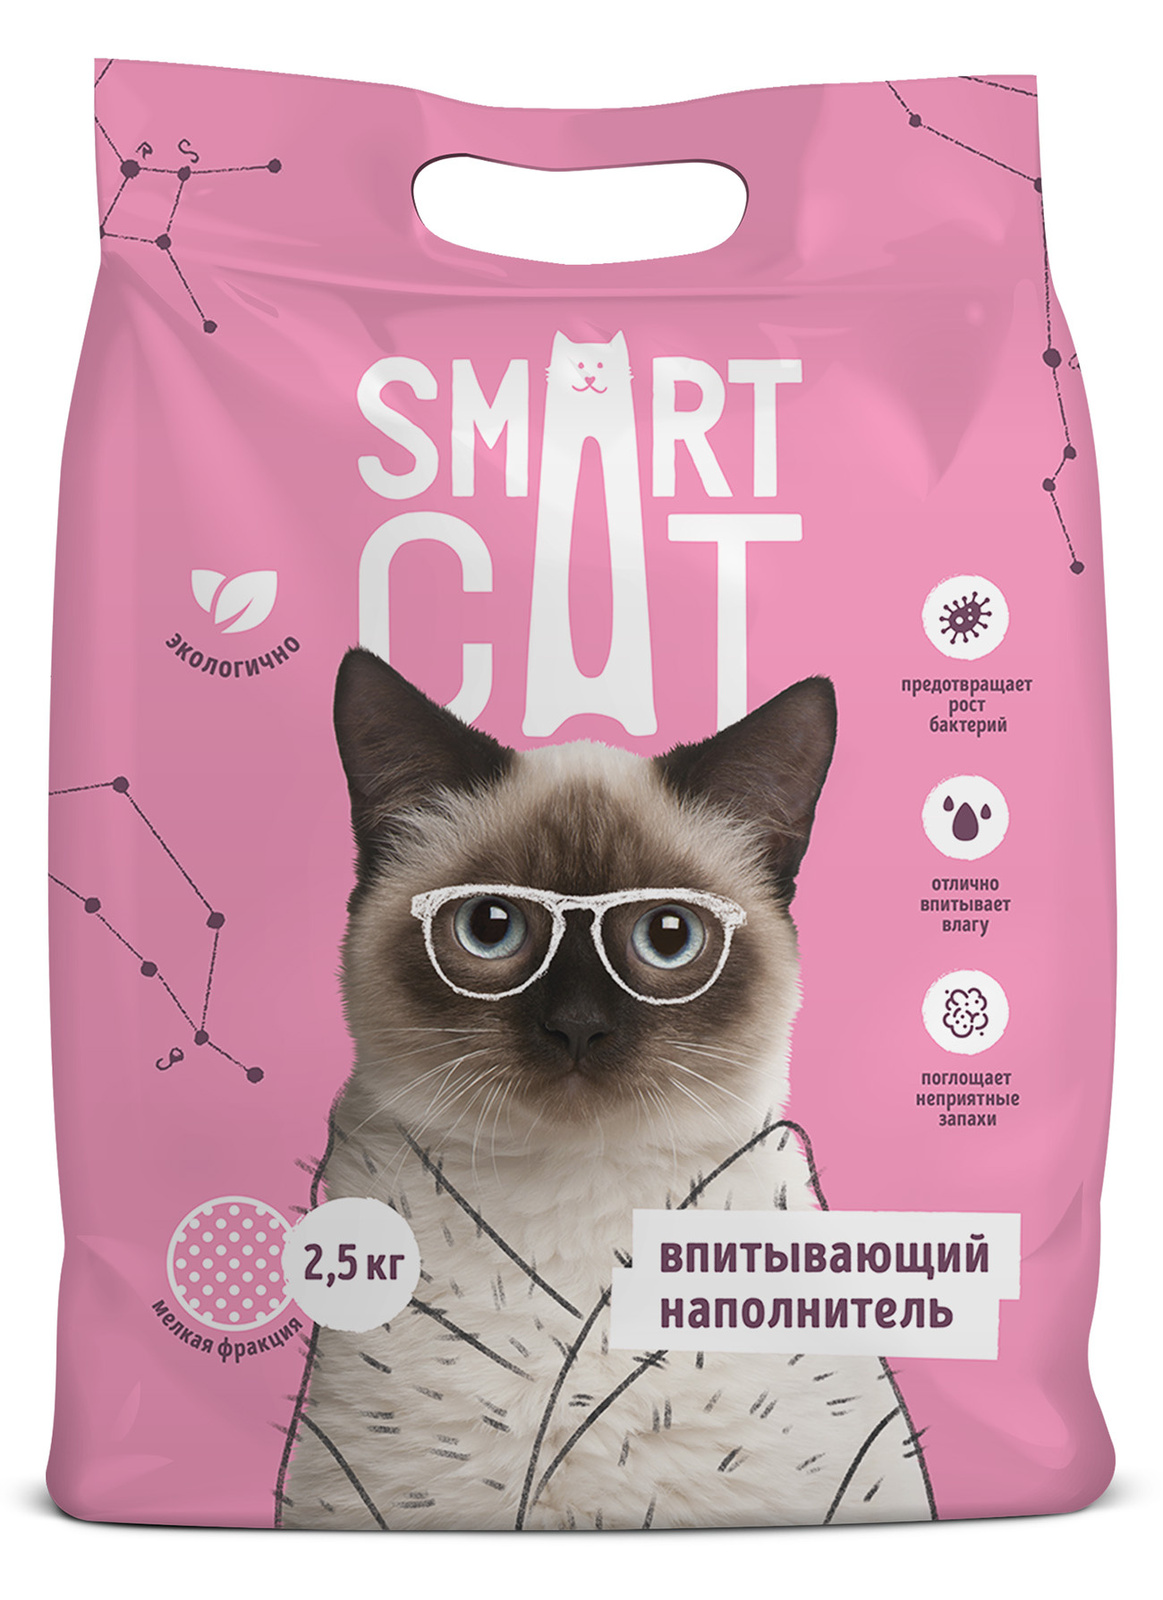 Smart Cat наполнитель Smart Cat наполнитель впитывающий наполнитель, мелкая фракция (2,5 кг) smart cat наполнитель smart cat наполнитель древесный наполнитель пеллеты 6мм 10 кг